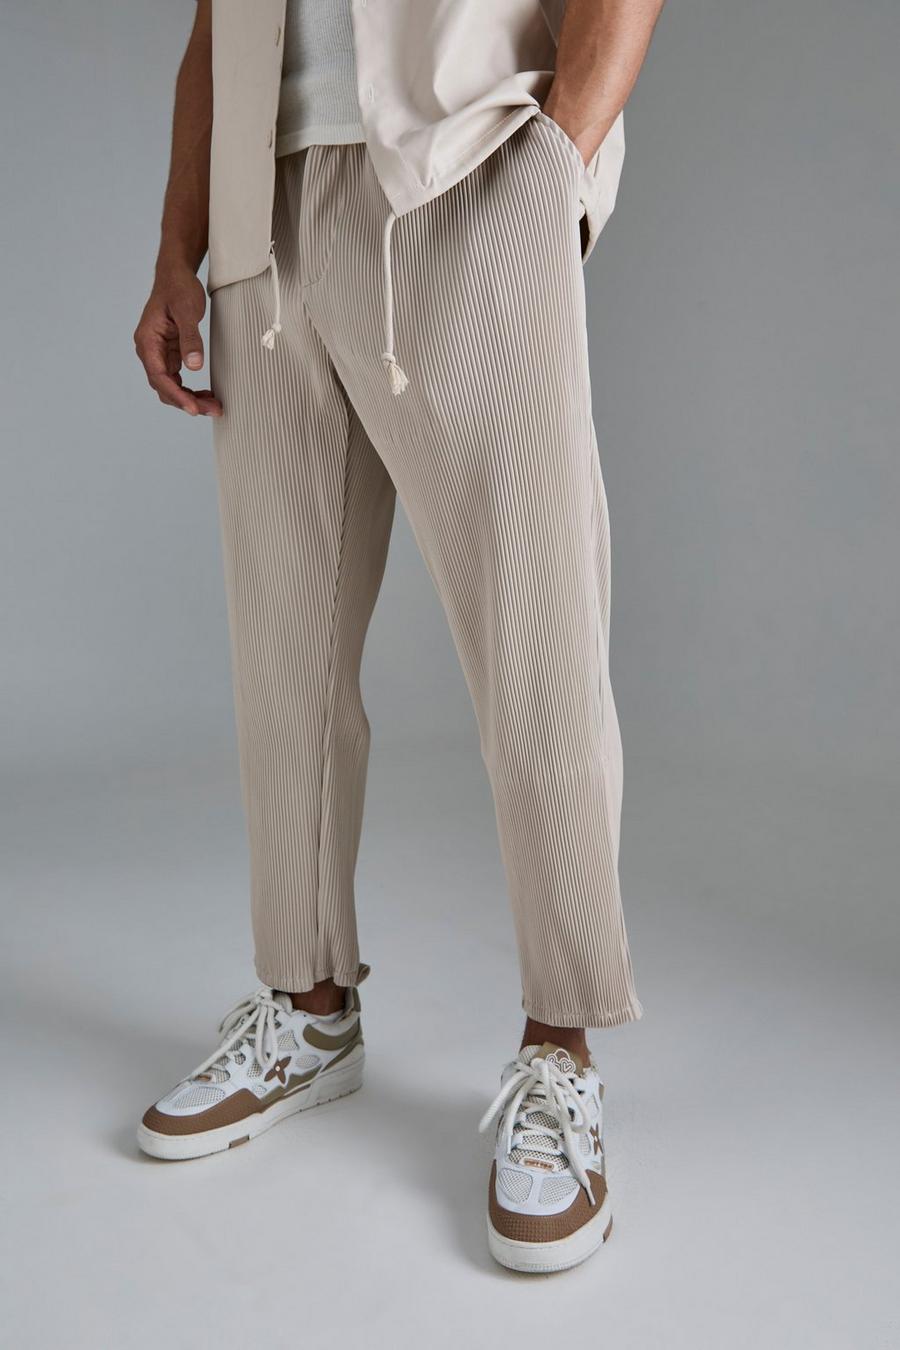 Pantalón de cuero sintético ajustado plisado, Ecru